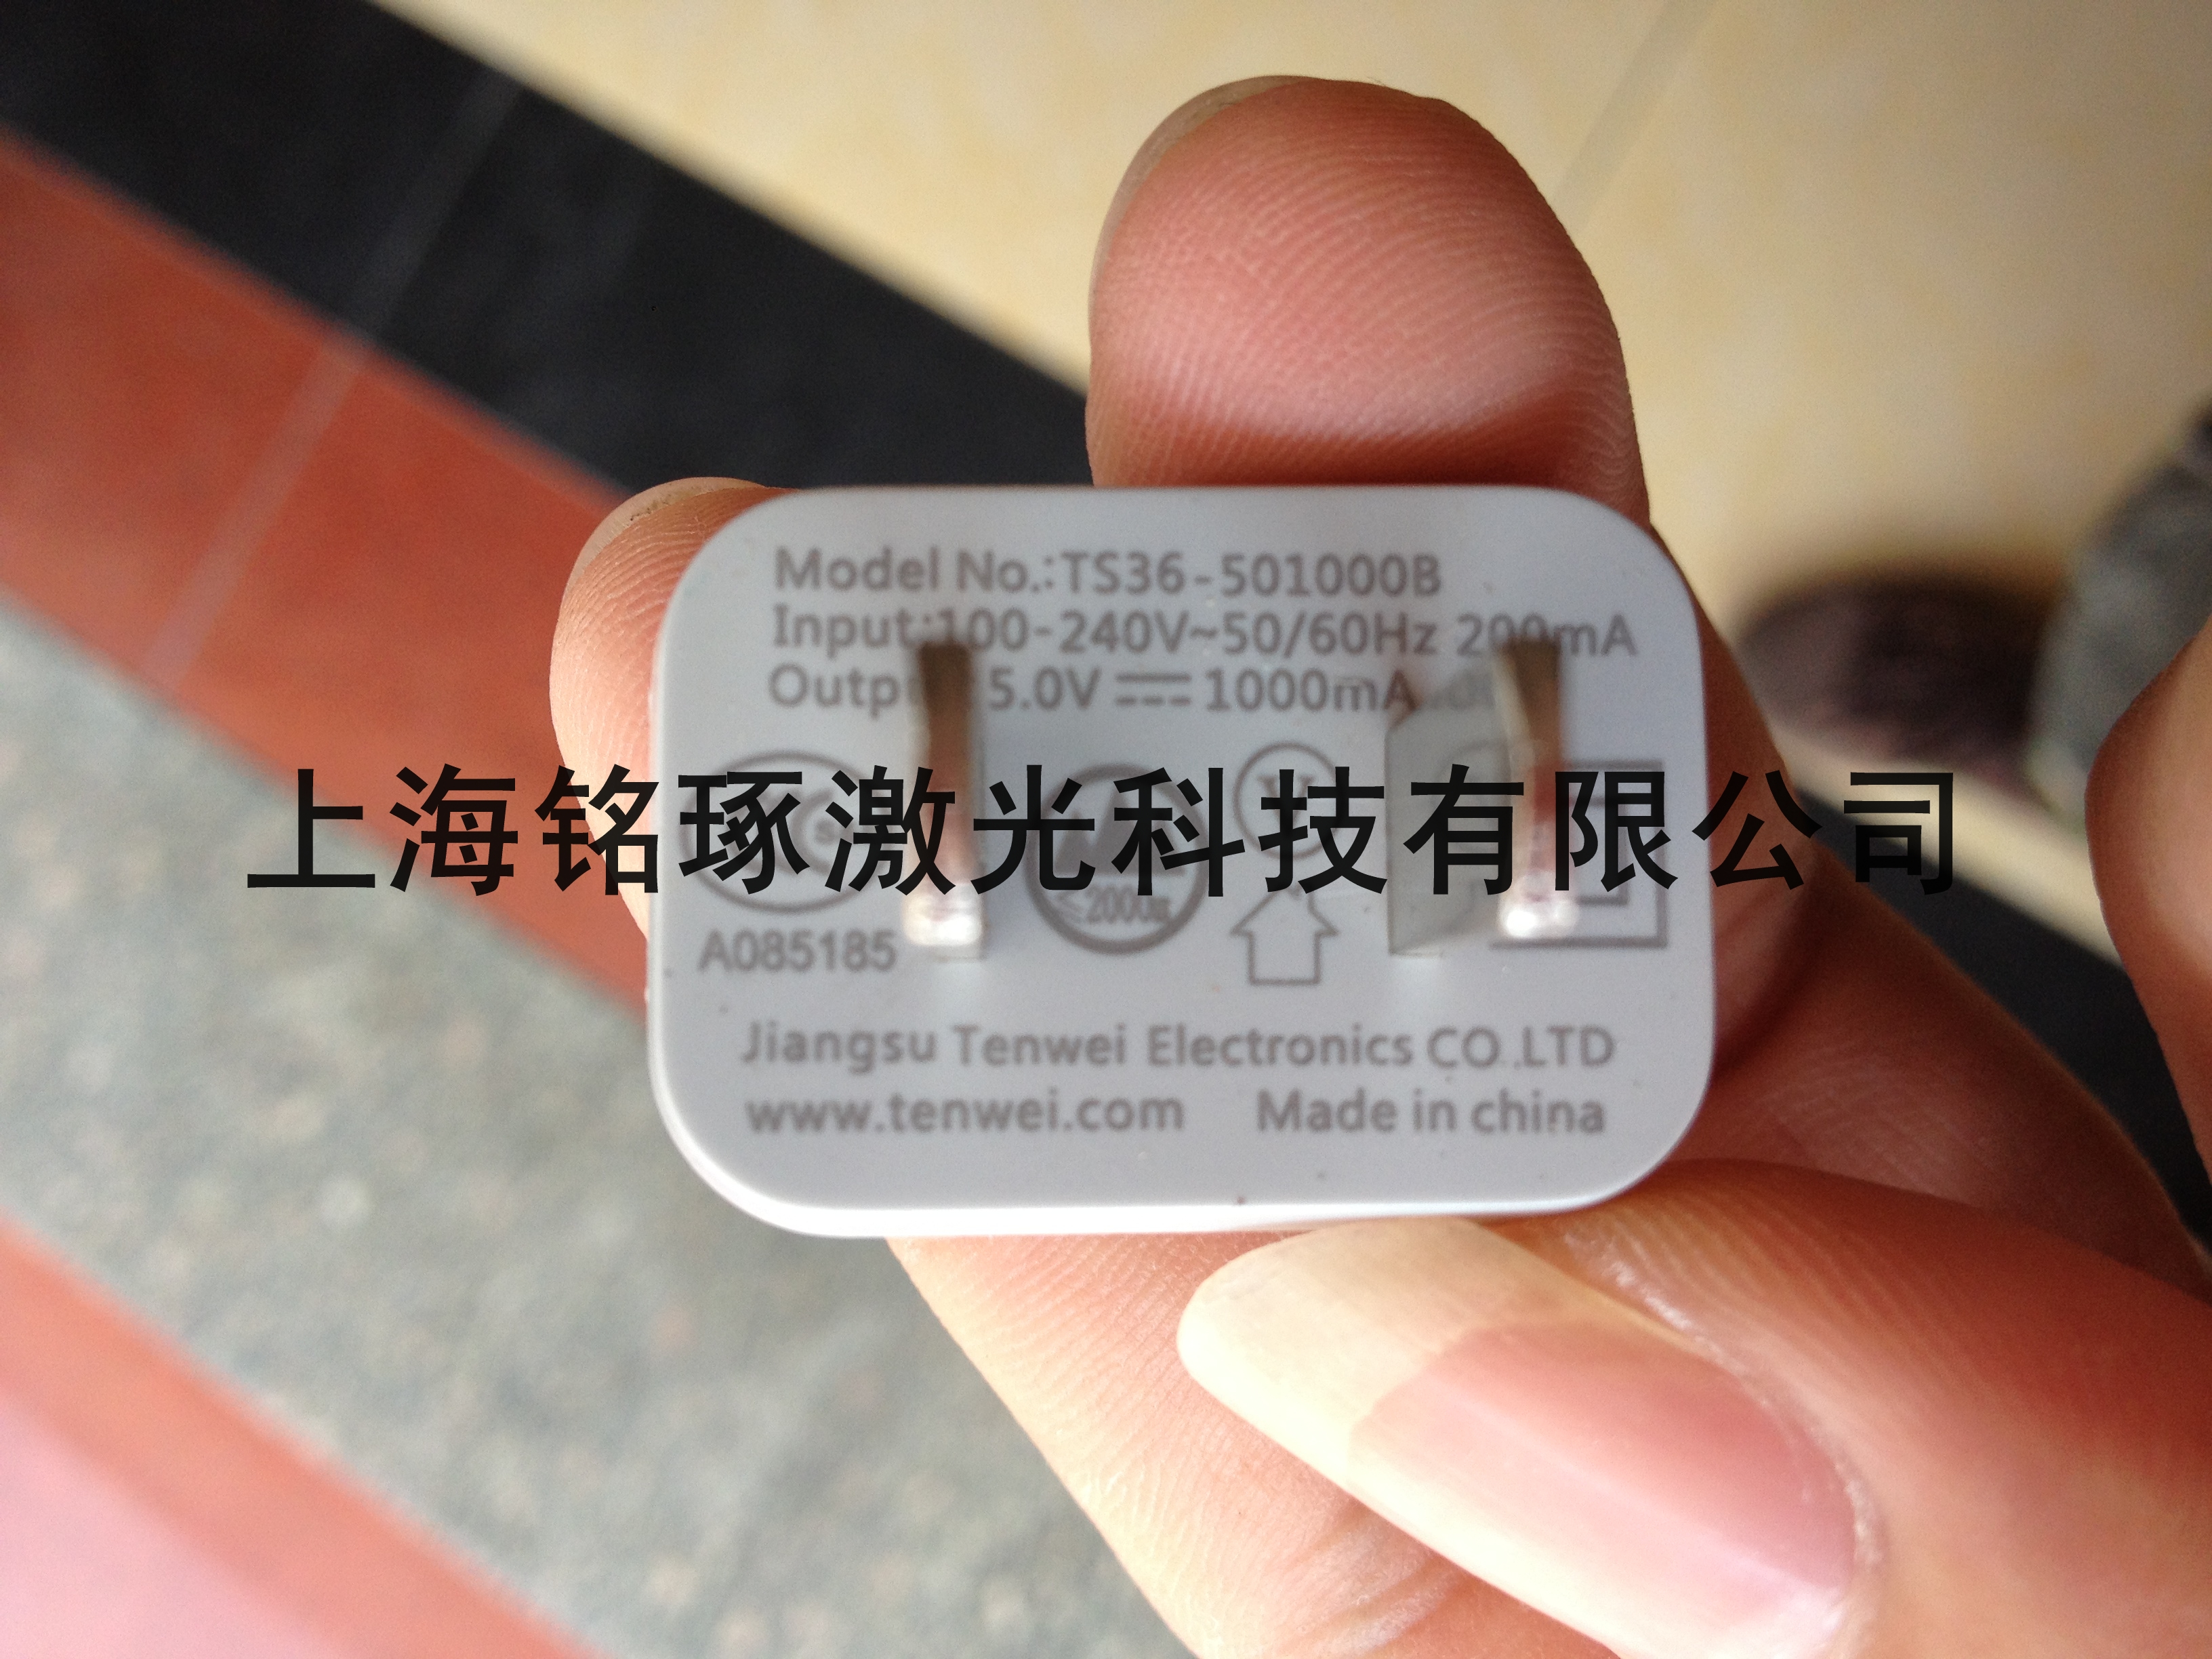 上海市激光打标机直销厂家激光打标机直销 激光打标机厂家电话 激光打标机供应商批发